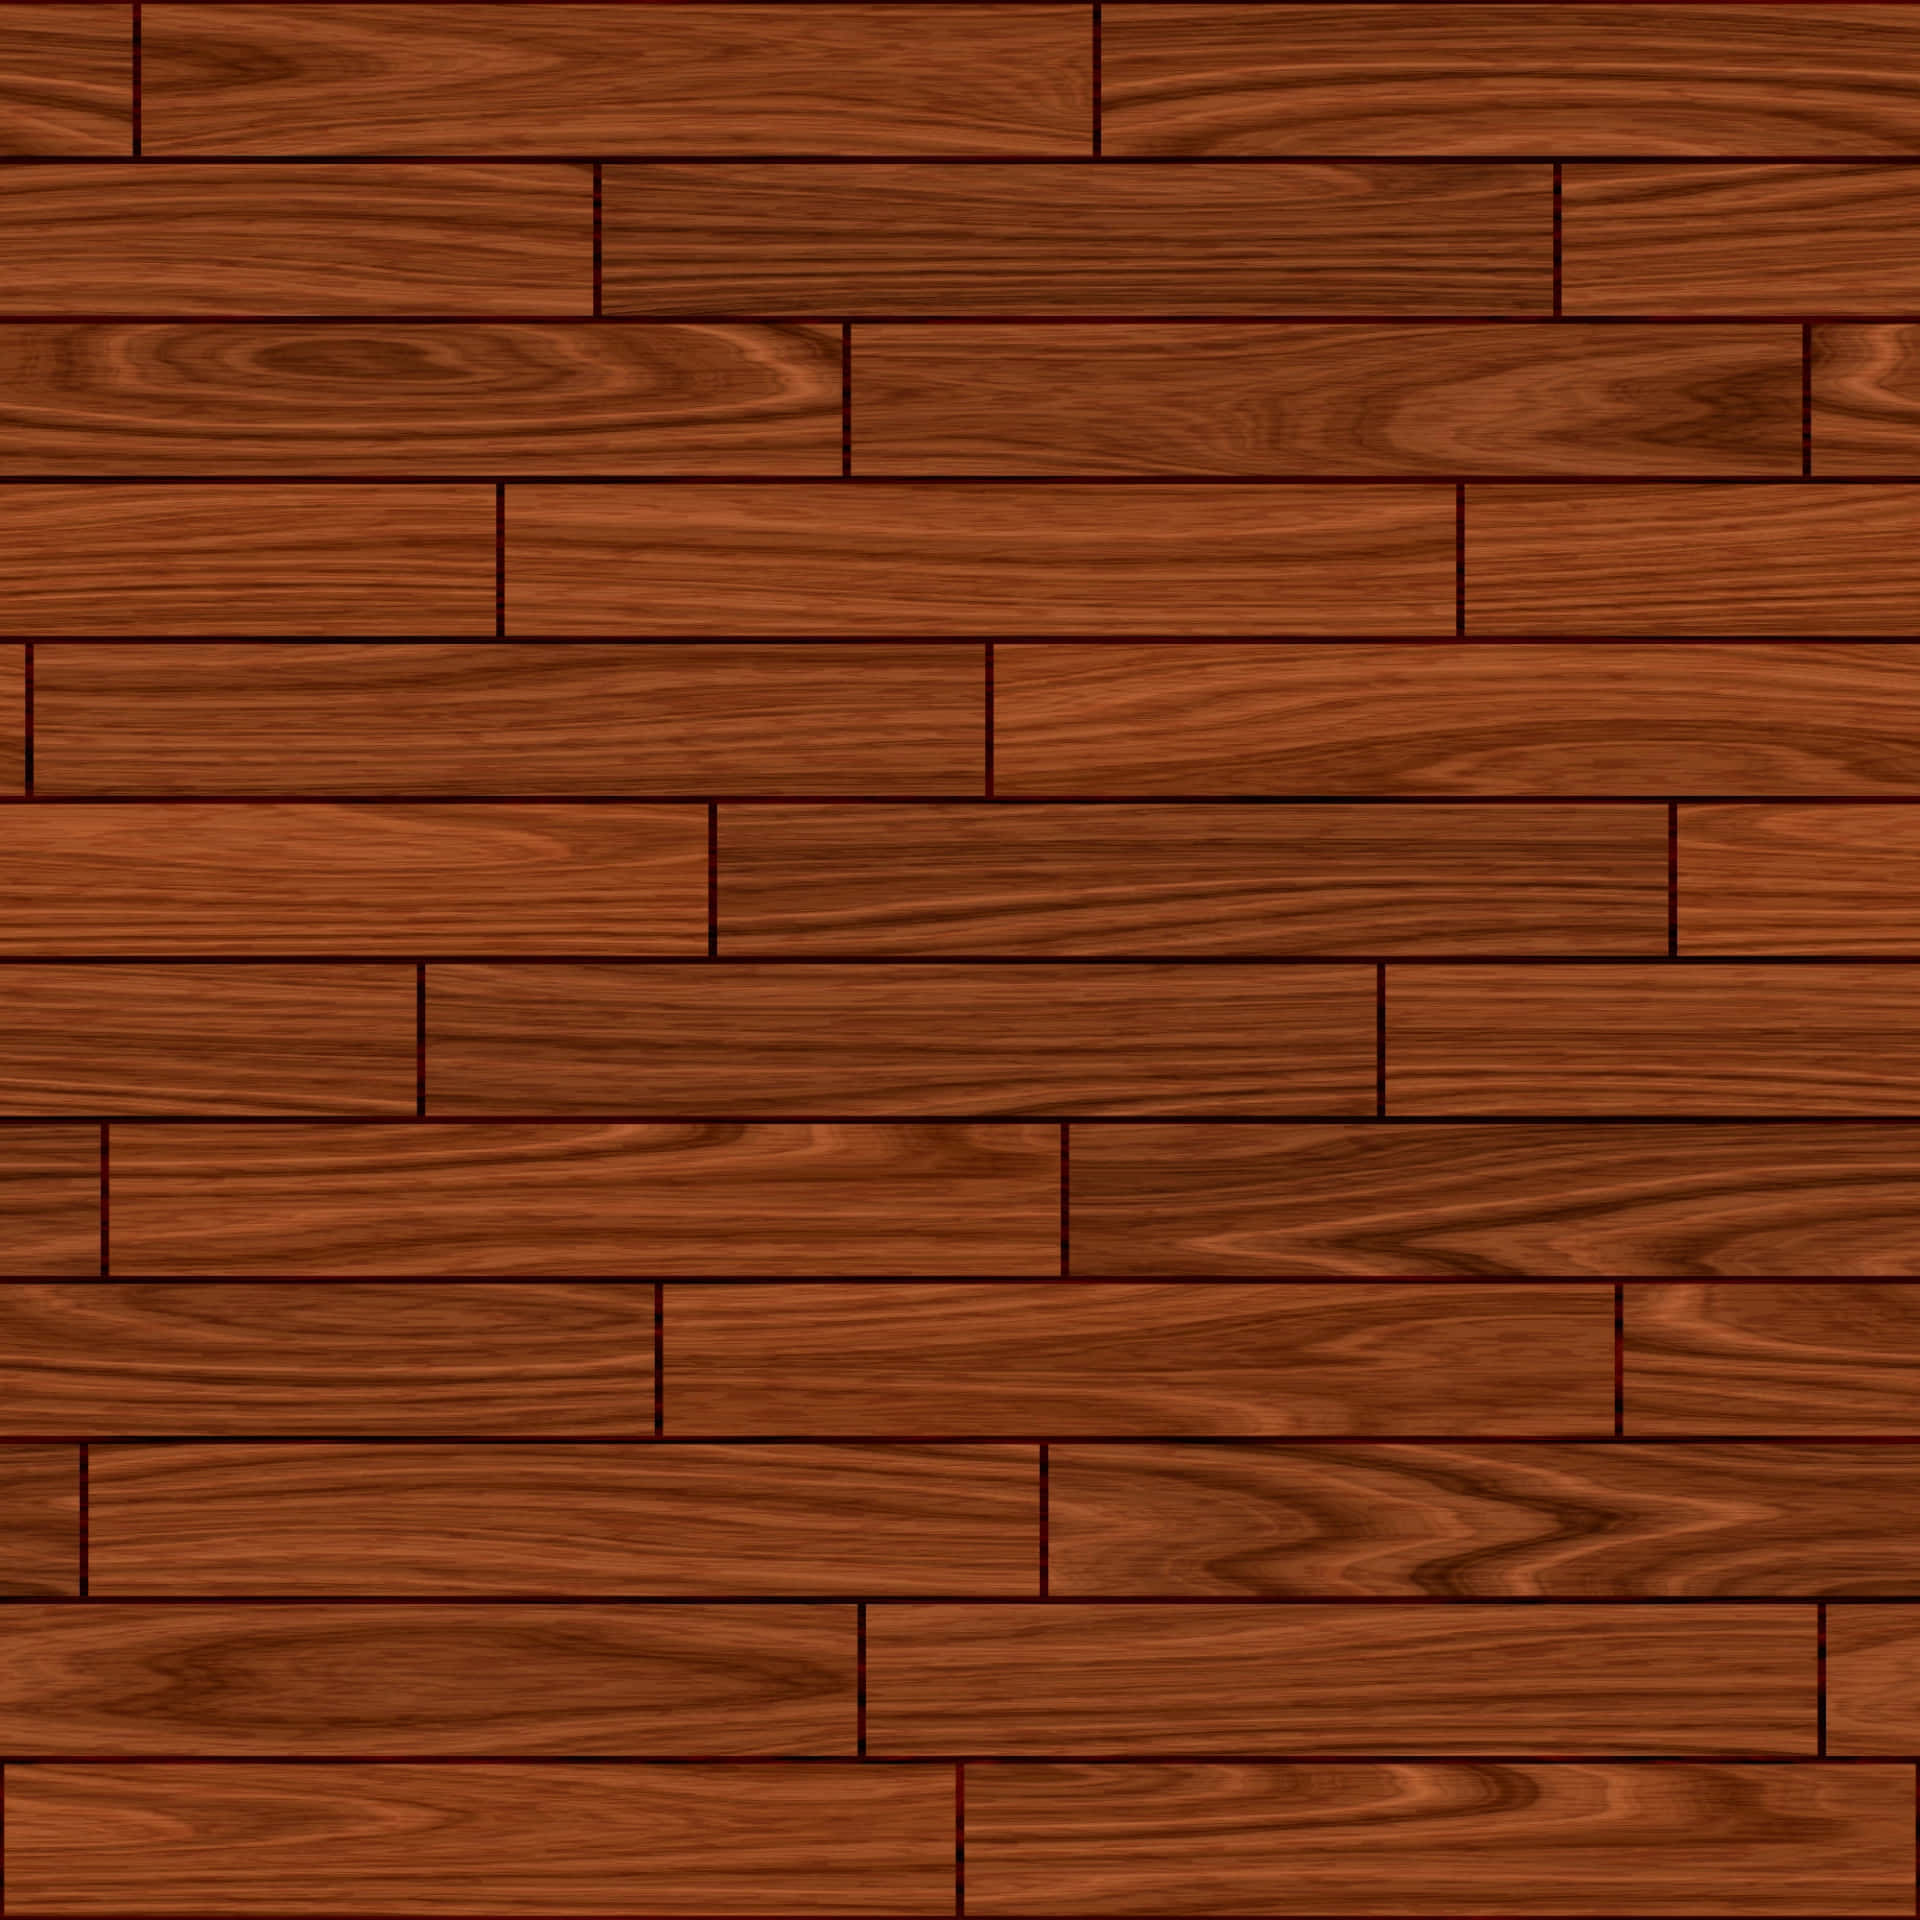 Wooden Floor Texture Vector